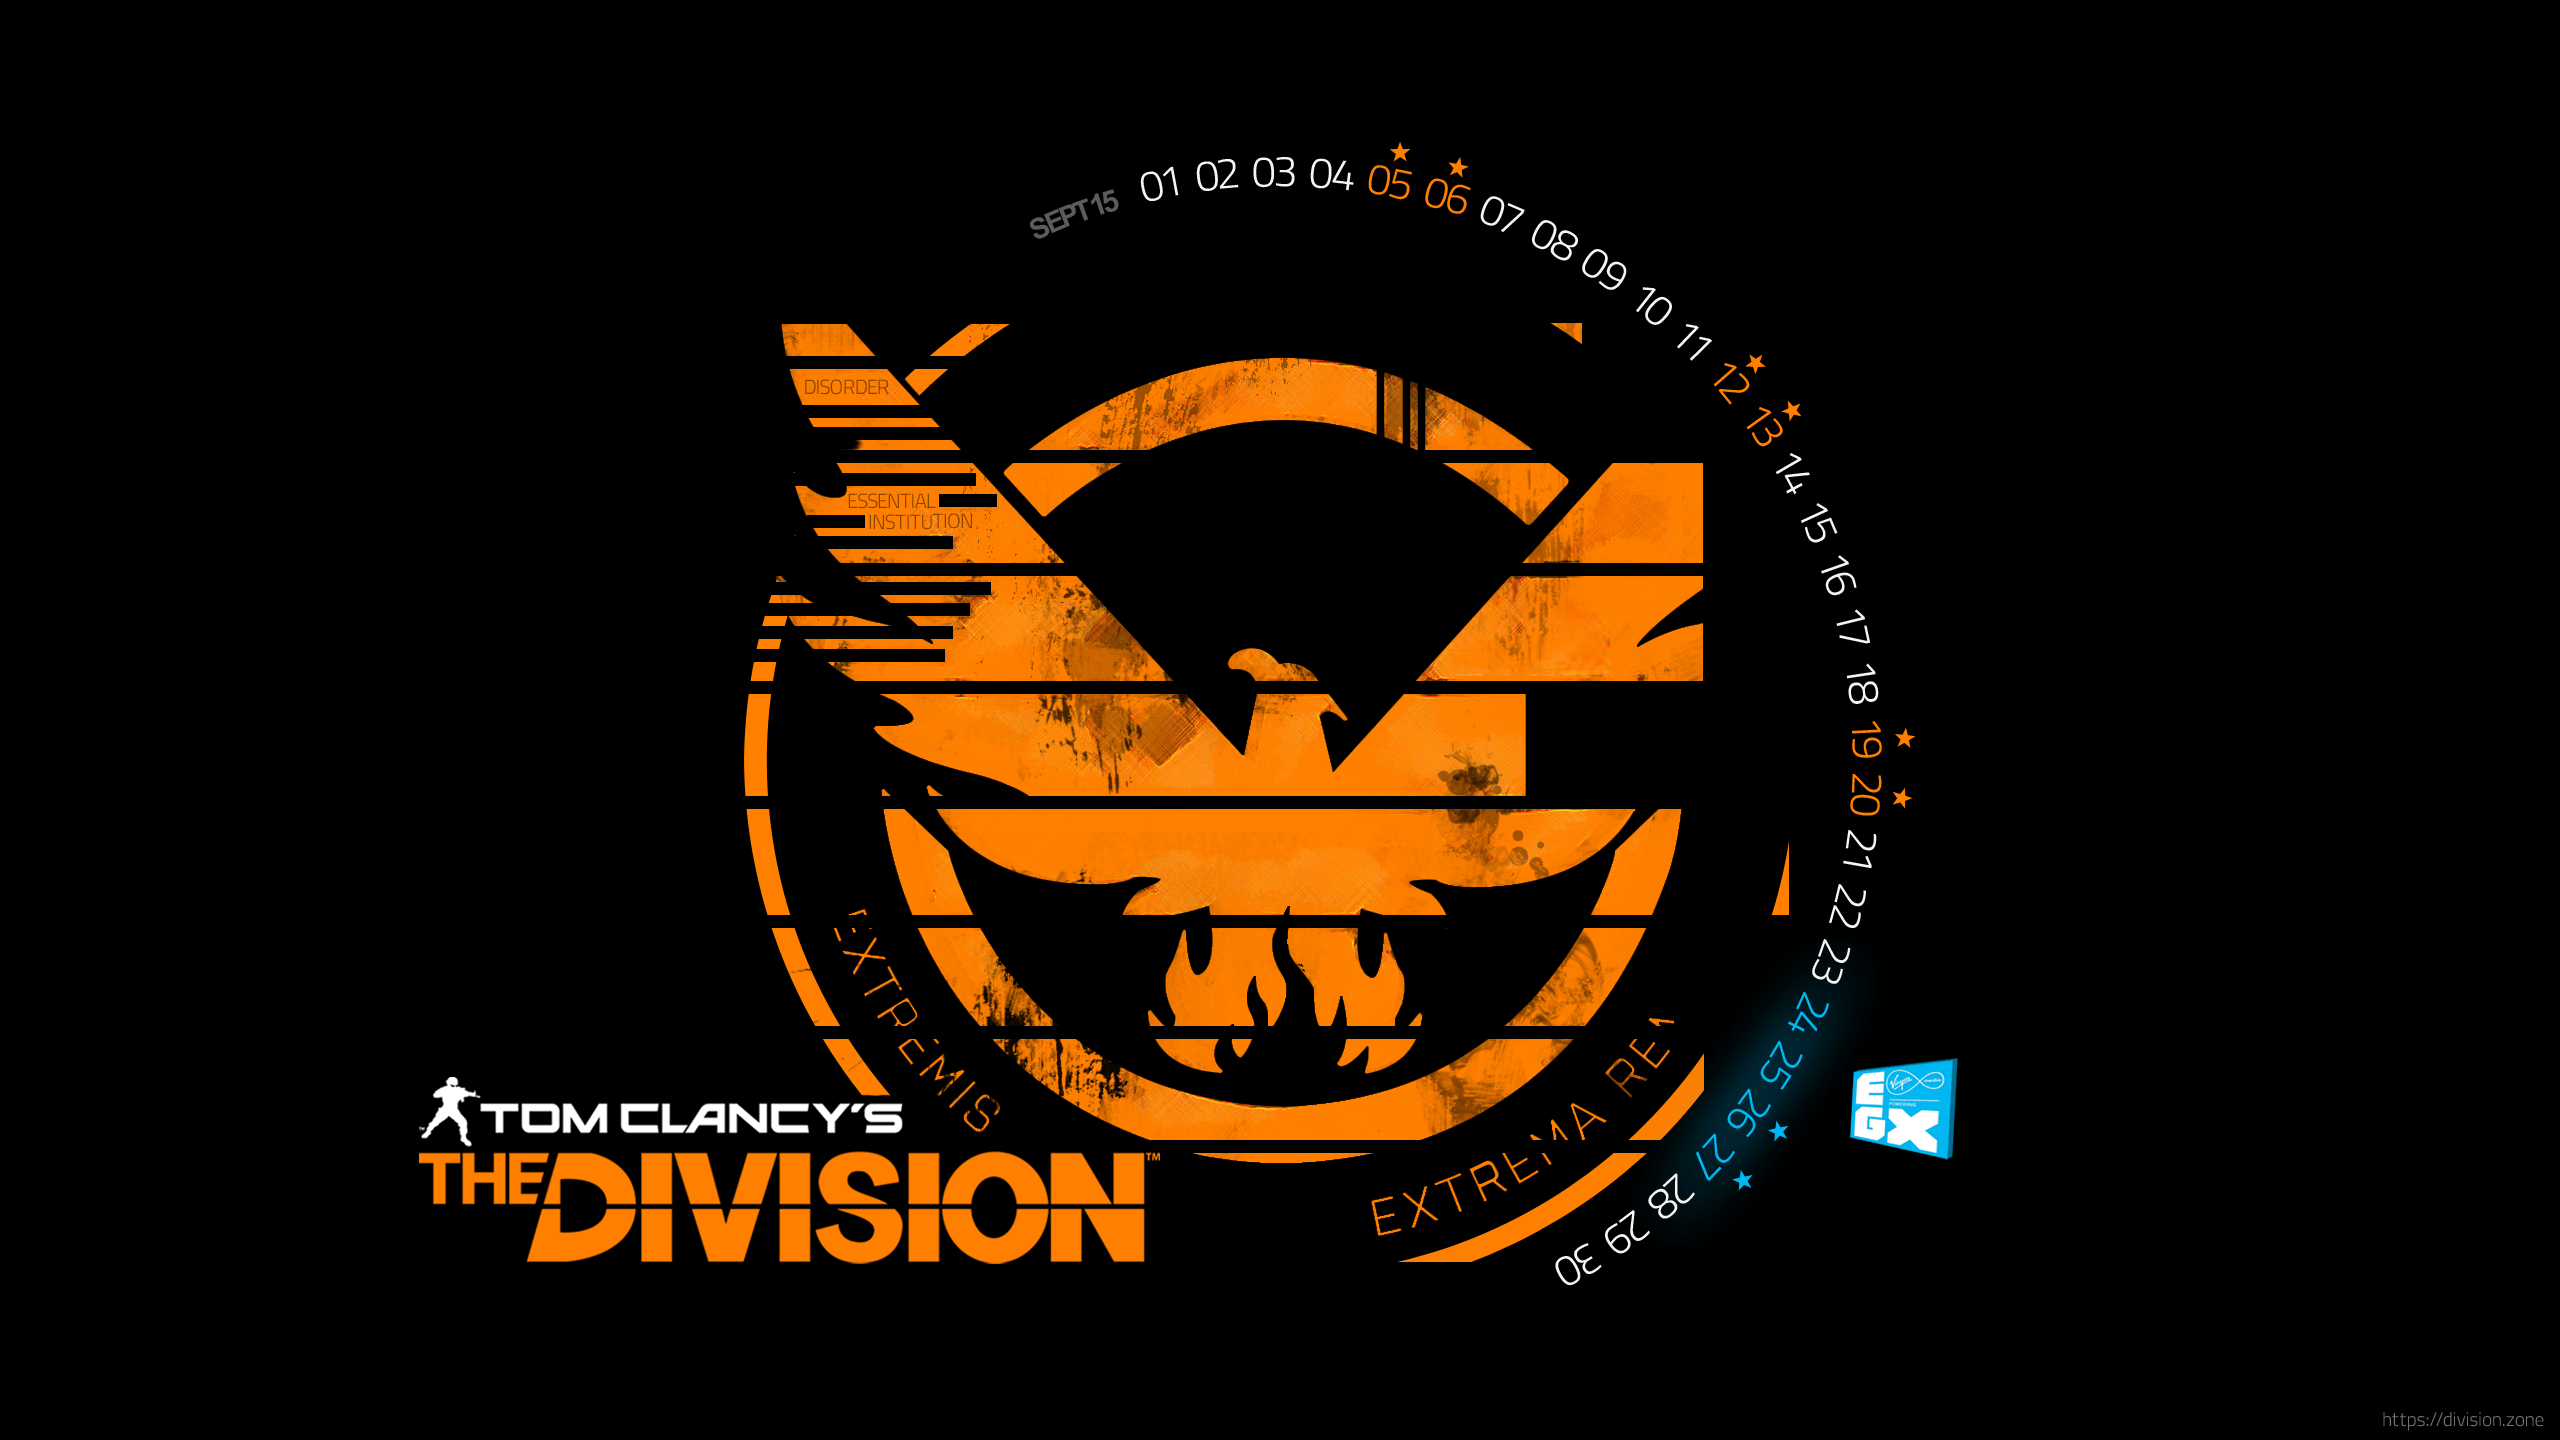 The Division Shd Logo - Division Logos